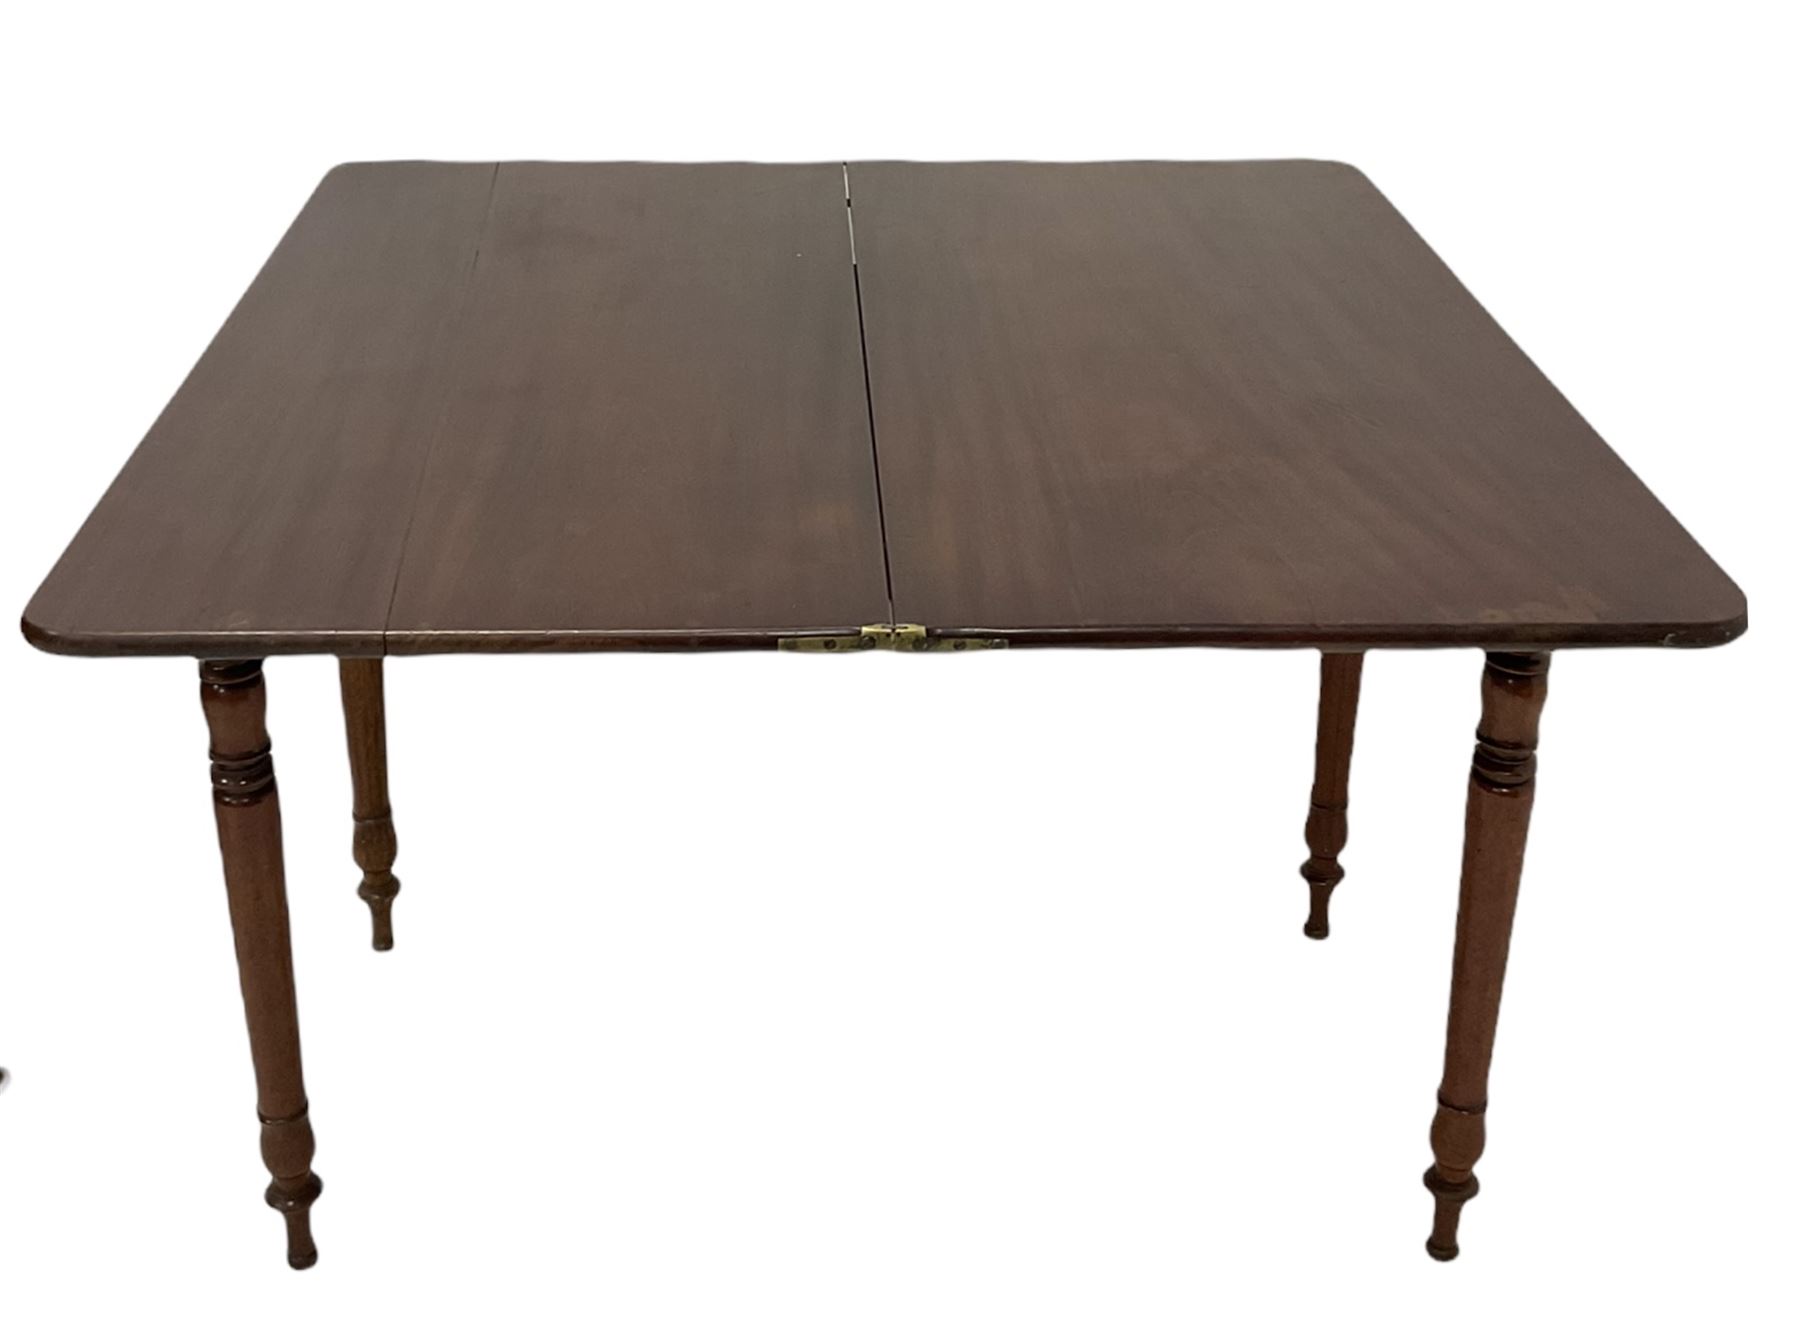 19th Century mahogany tea table - Image 2 of 5